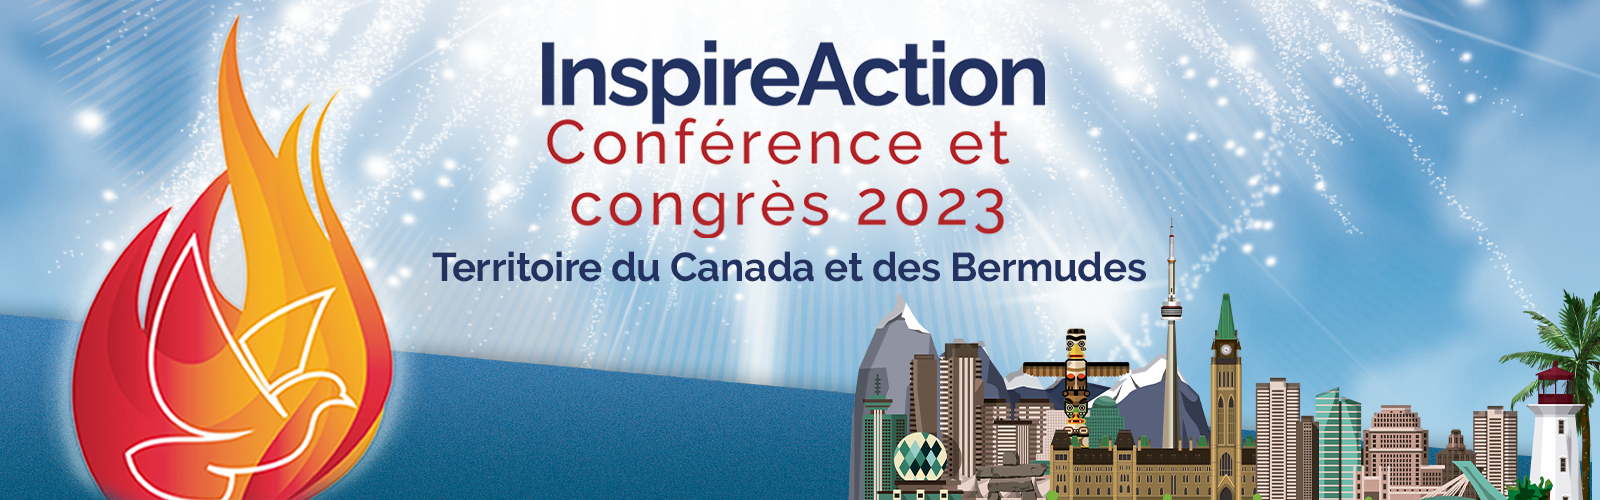 InspireAction 2023 Conférence et congrès Territoire du Canada et des Bermudes